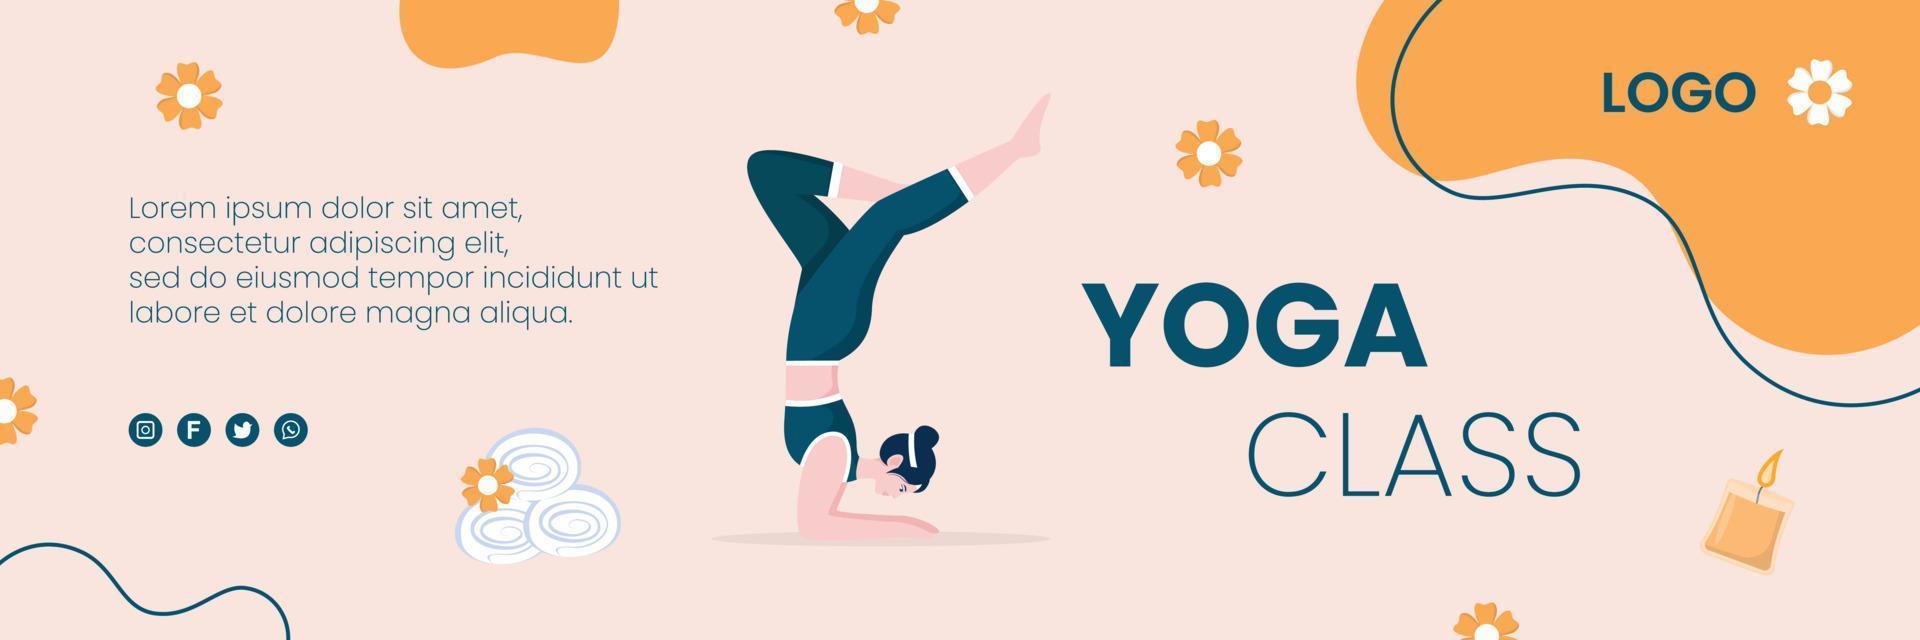 cubierta de yoga y meditación editable de fondo cuadrado adecuado para medios sociales, alimentación ig, tarjeta, saludos, anuncios impresos y web en Internet vector